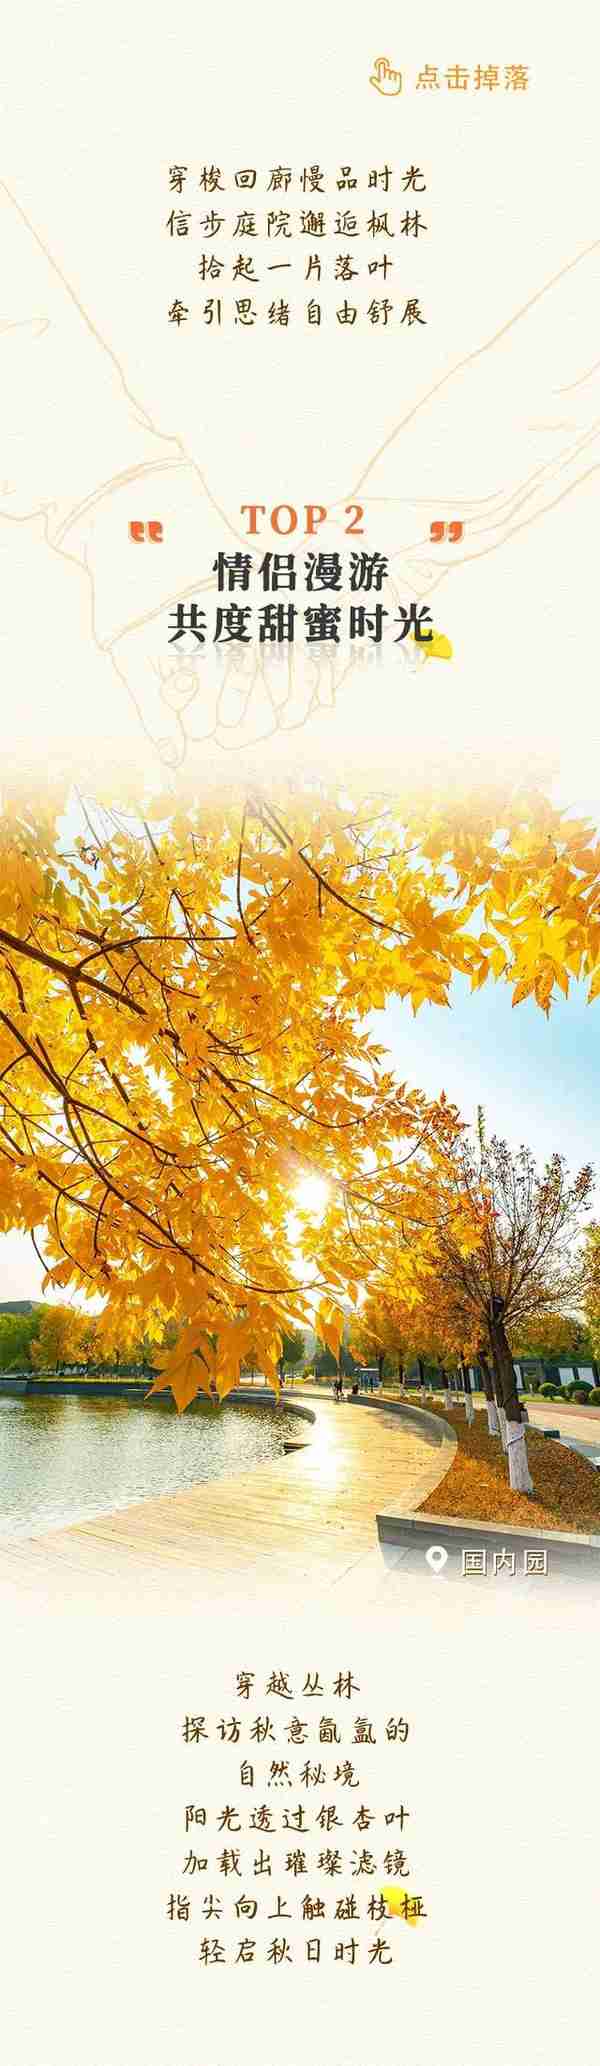 美了，美了！来南湖赏秋呀！